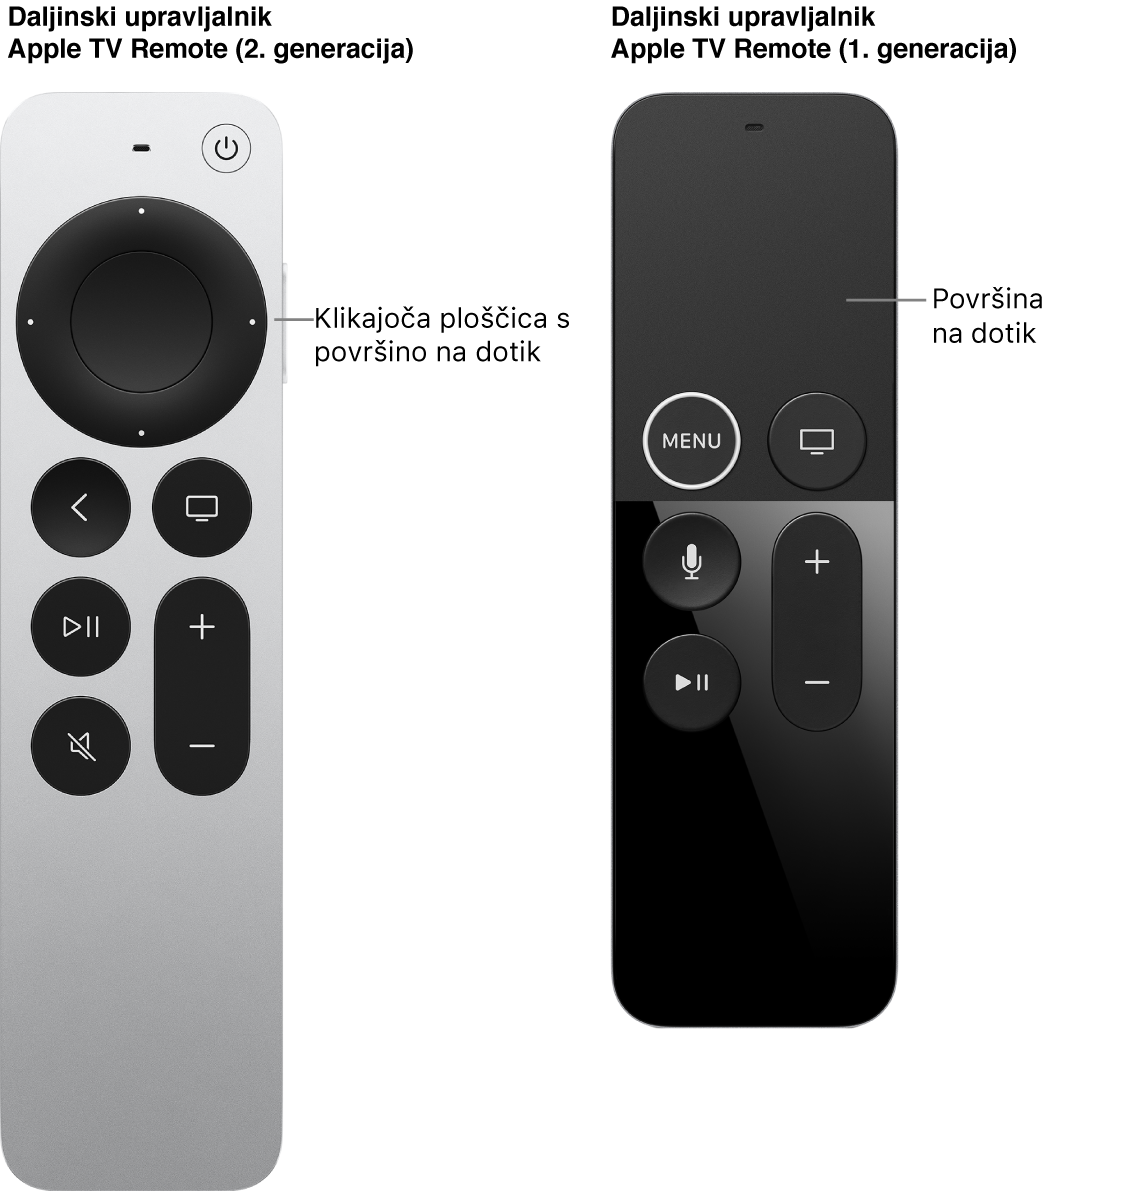 Daljinski upravljalnik Apple TV Remote (2. in 3. generacije) s klikajočo ploščico in daljinskega upravljalnika Apple TV Remote (1. generacije) s površino na dotik